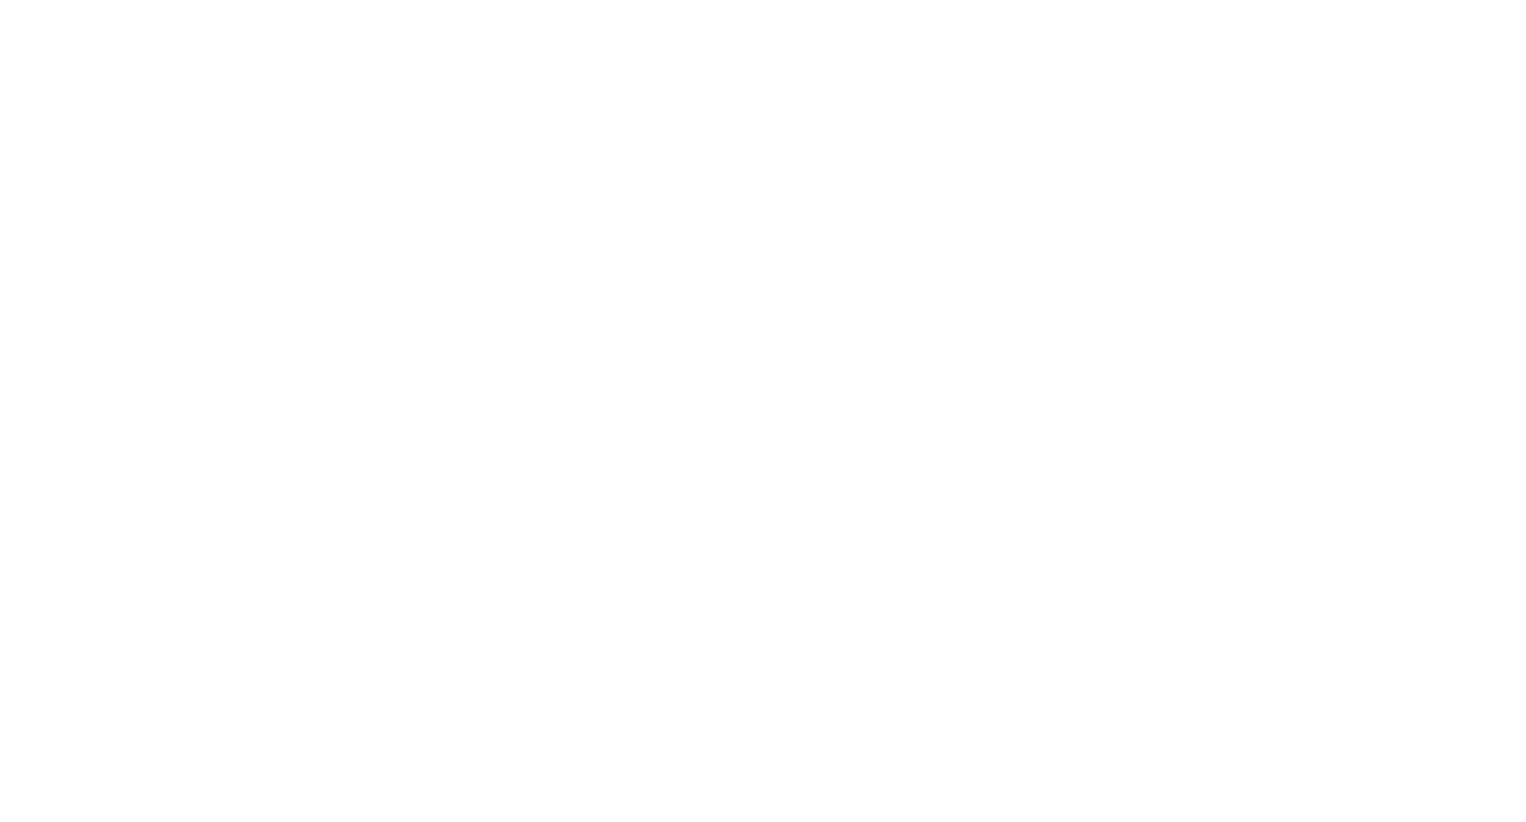 Bid Corp logo pour fonds sombres (PNG transparent)